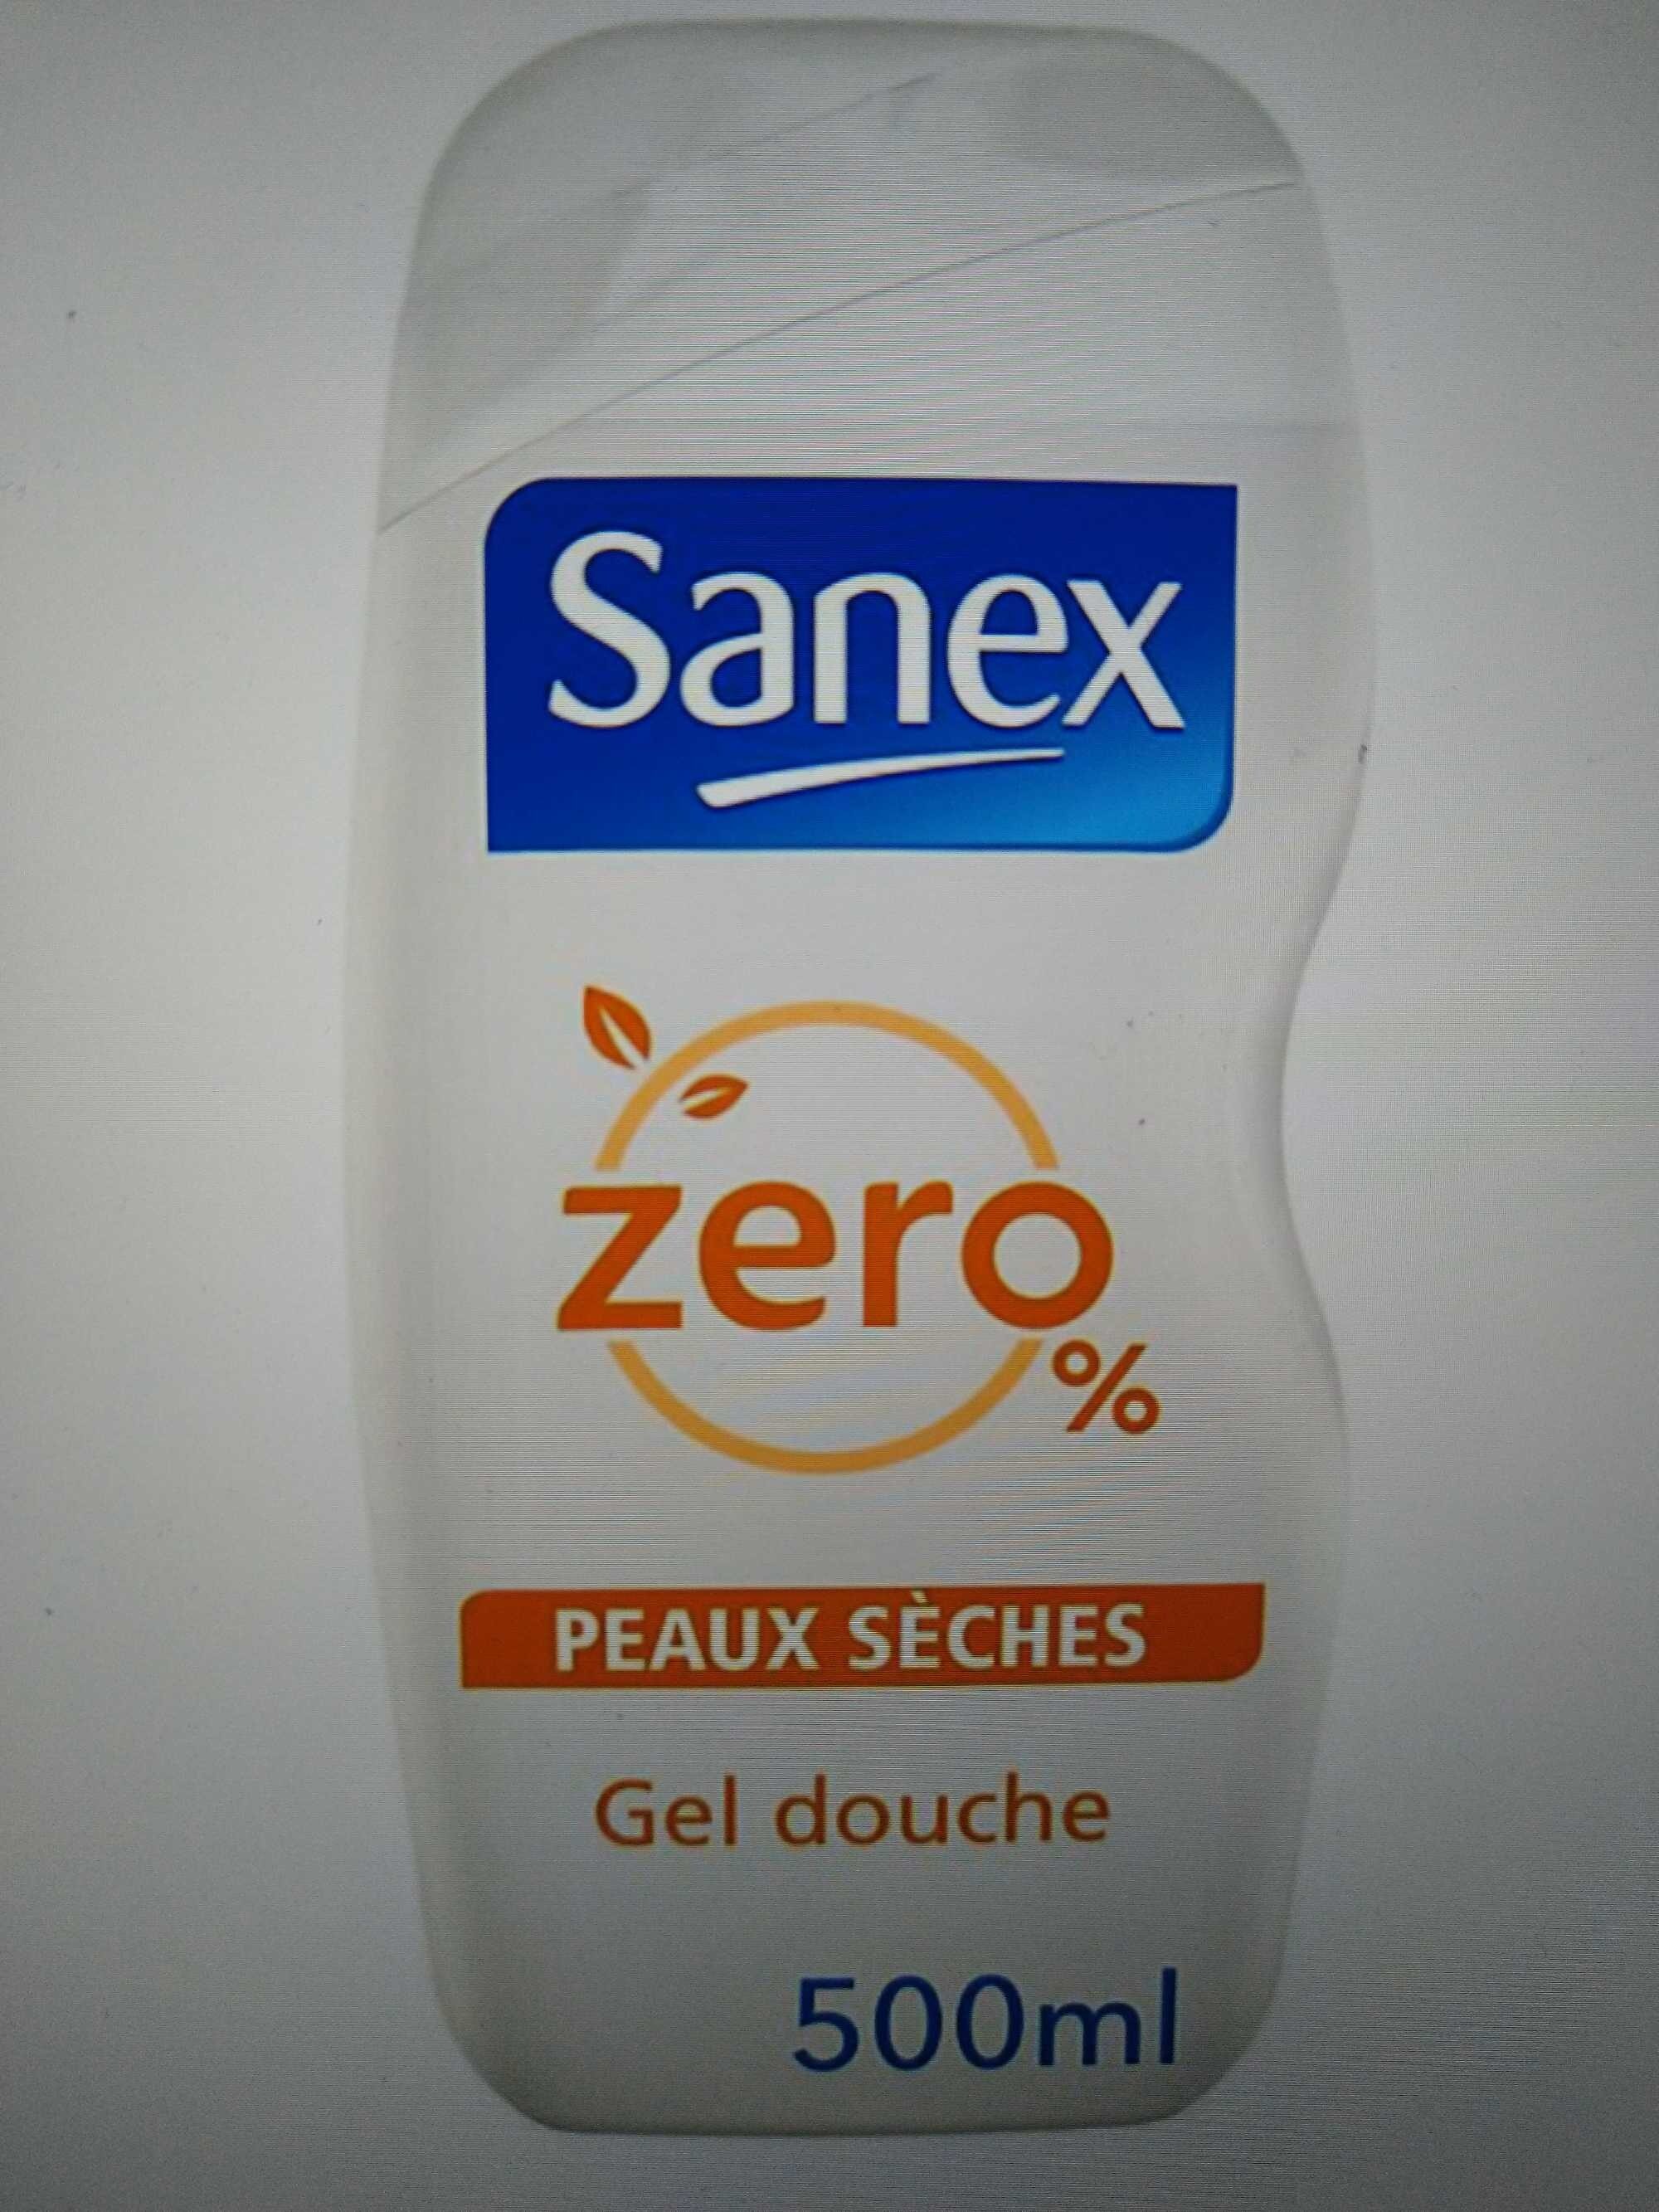 Zero 0% Gel douche Peaux sèches - Produto - fr